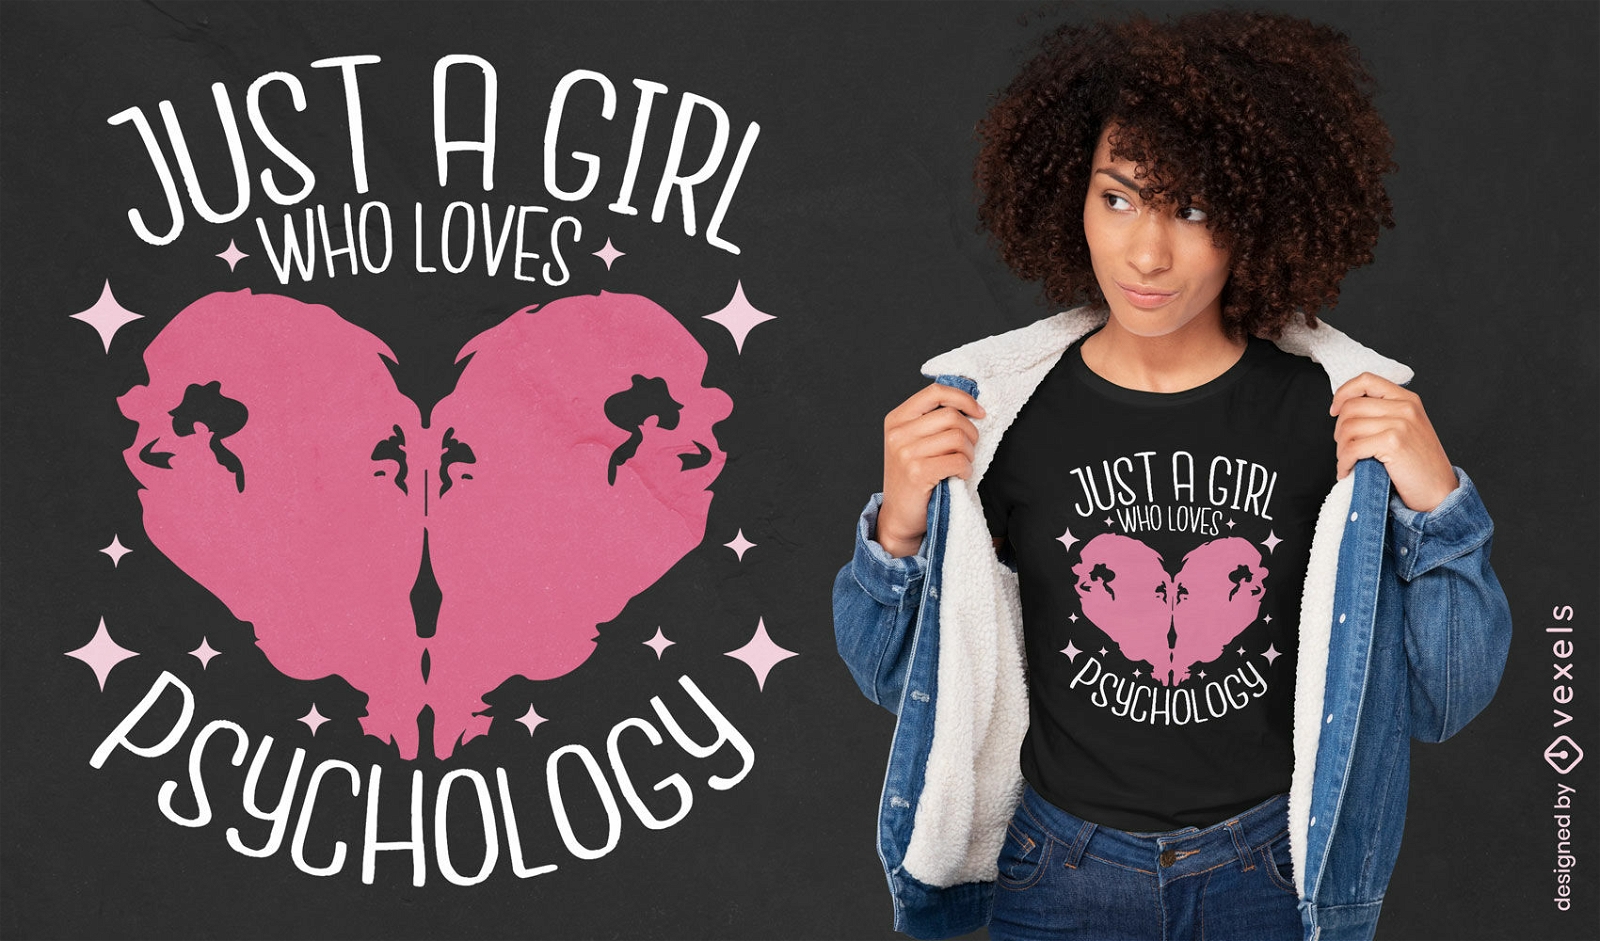 Garota que ama design de camiseta de psicologia